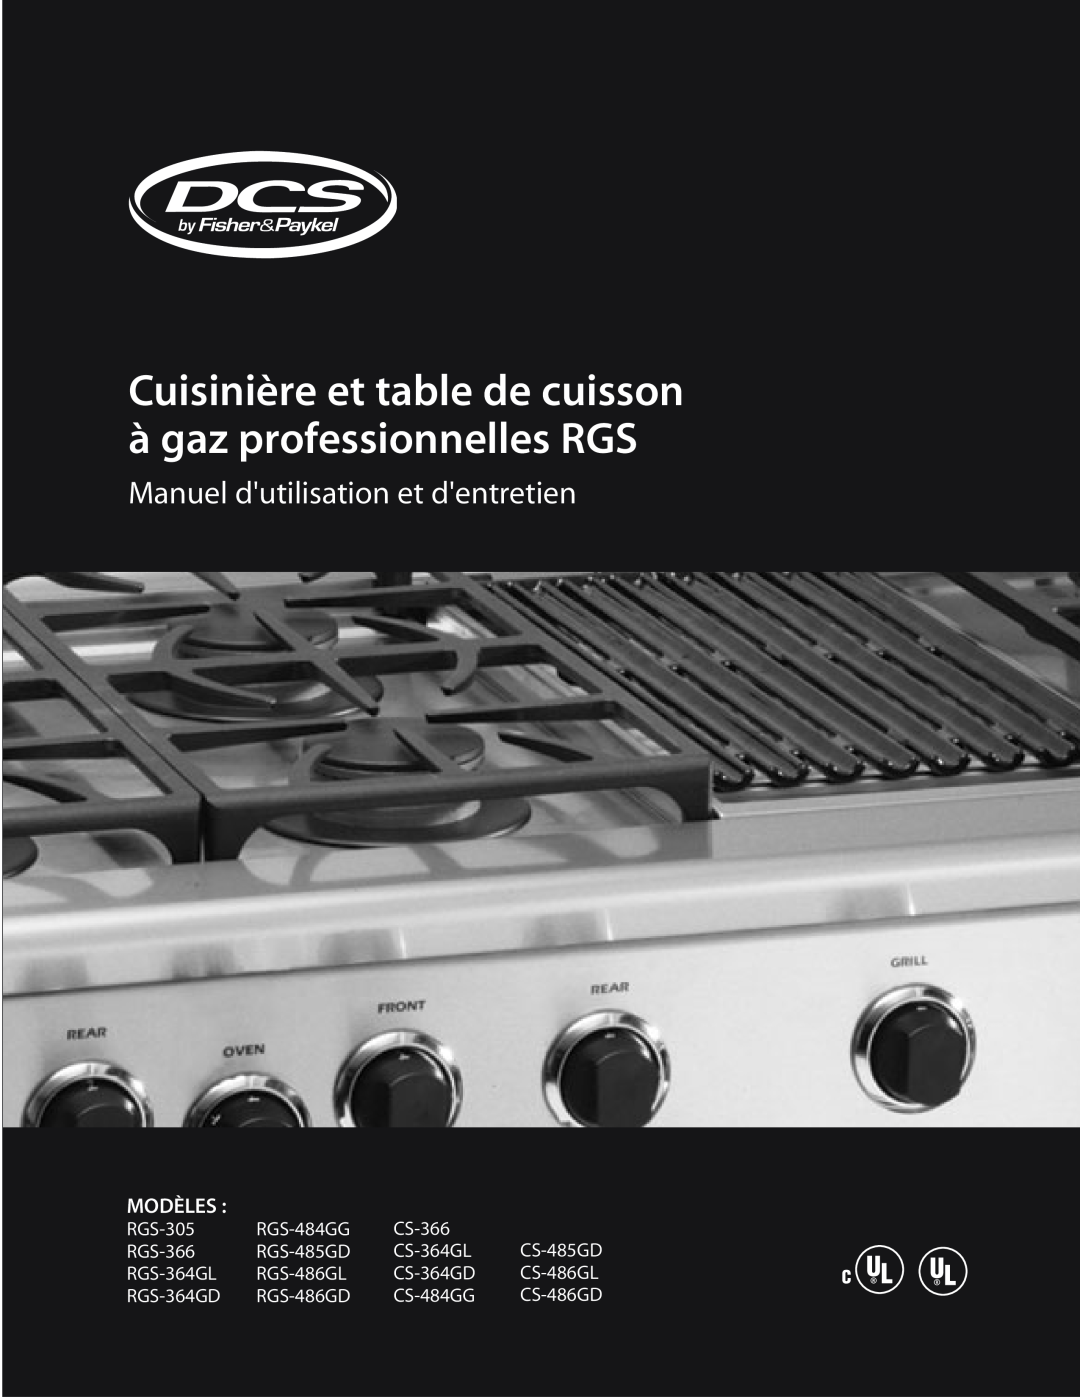 DCS RGS-366, RGS-305 Cuisinière et table de cuisson à gaz professionnelles RGS, Manuel dutilisation et dentretien, Modèles 